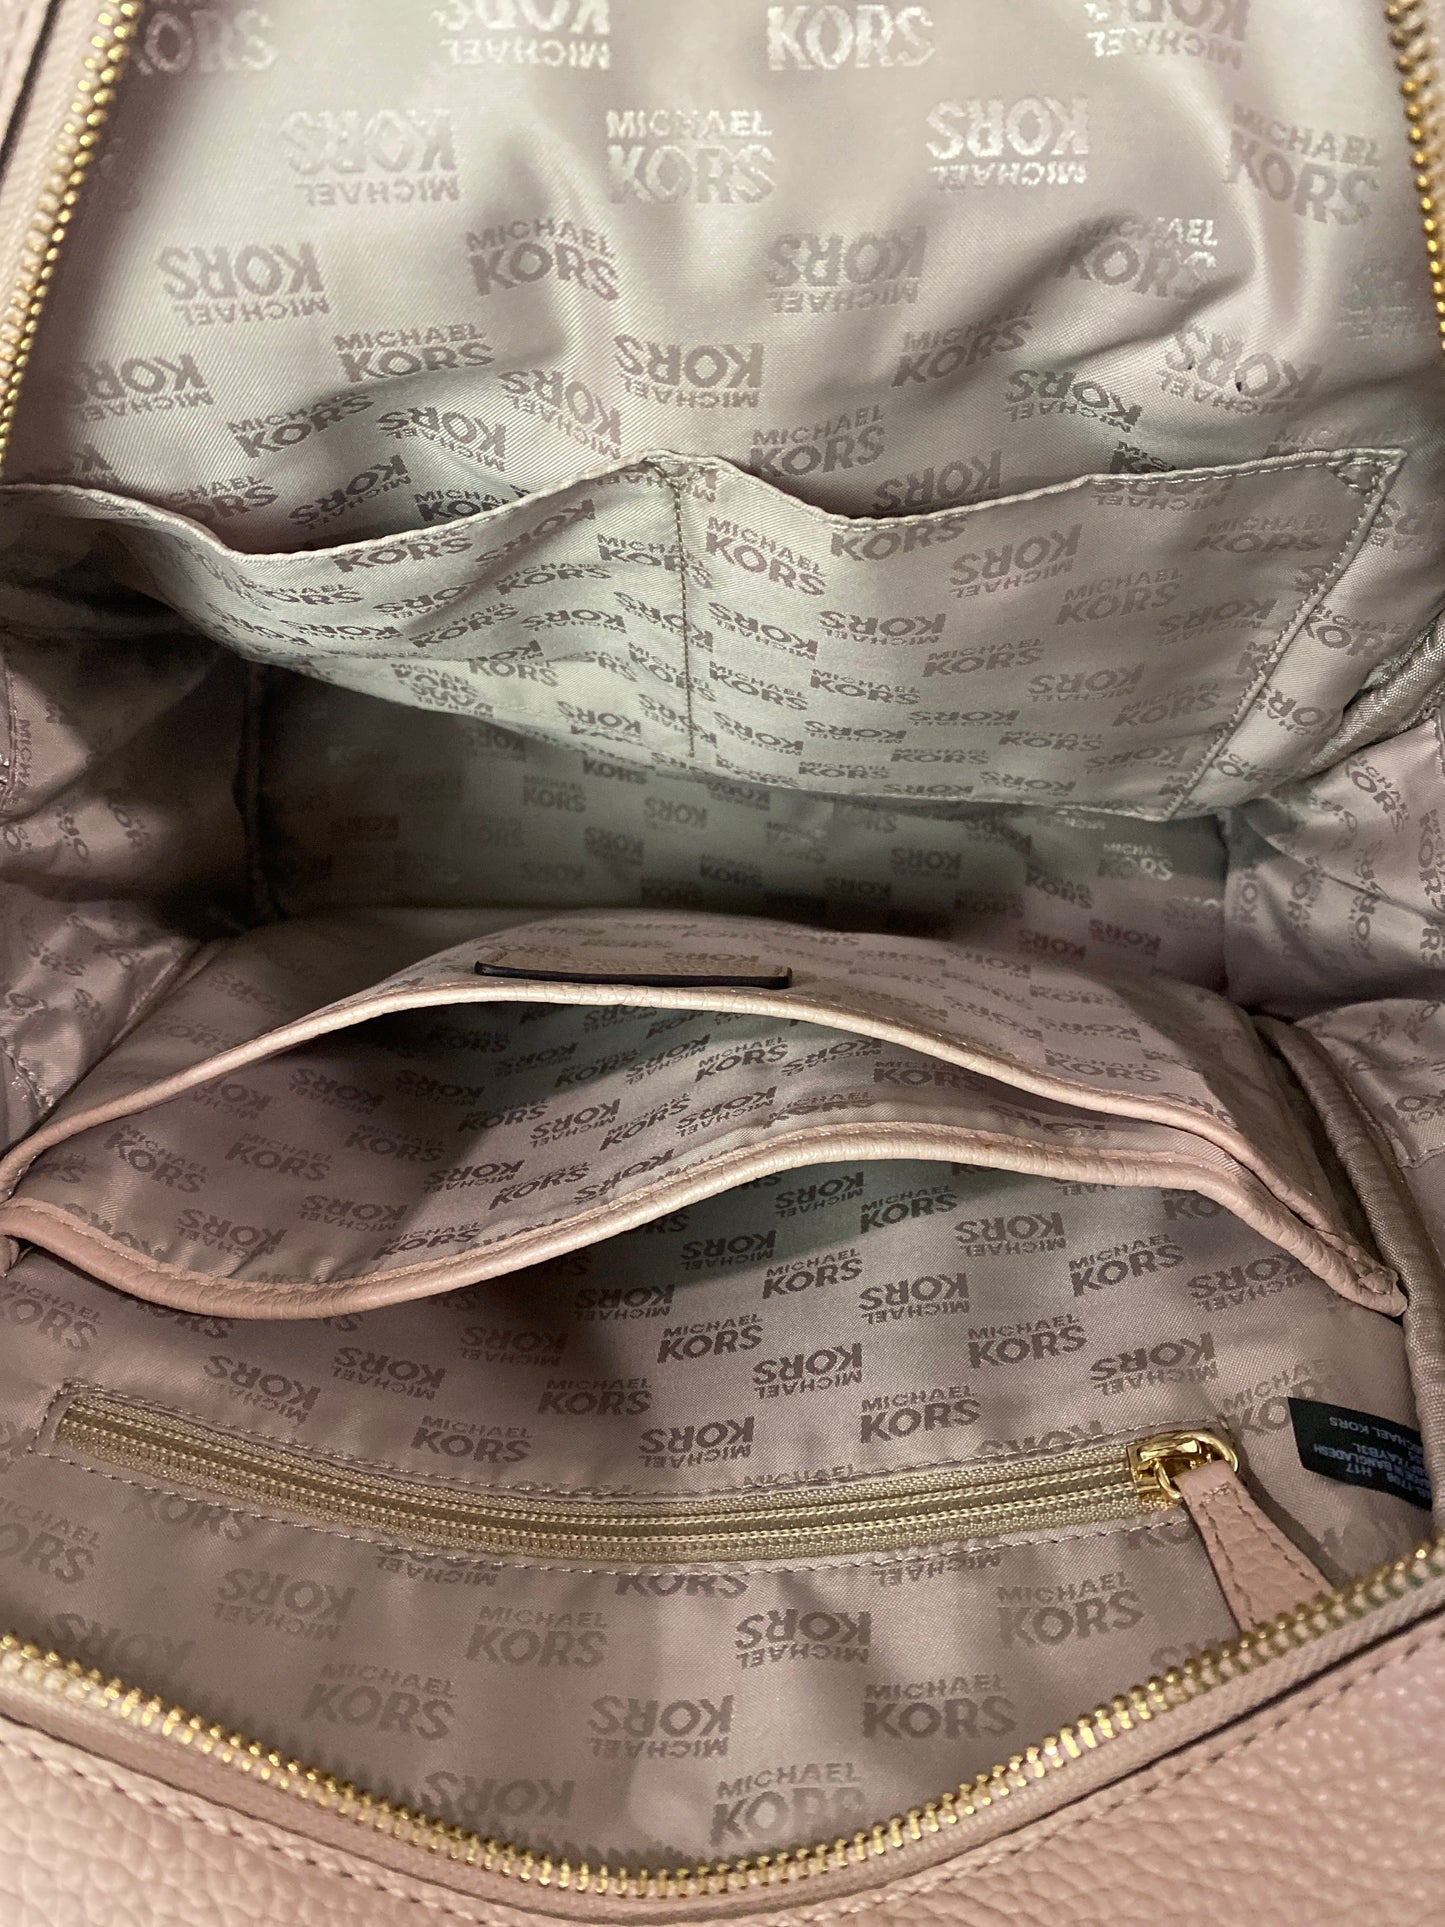 Backpack Designer Michael Kors, Size Large